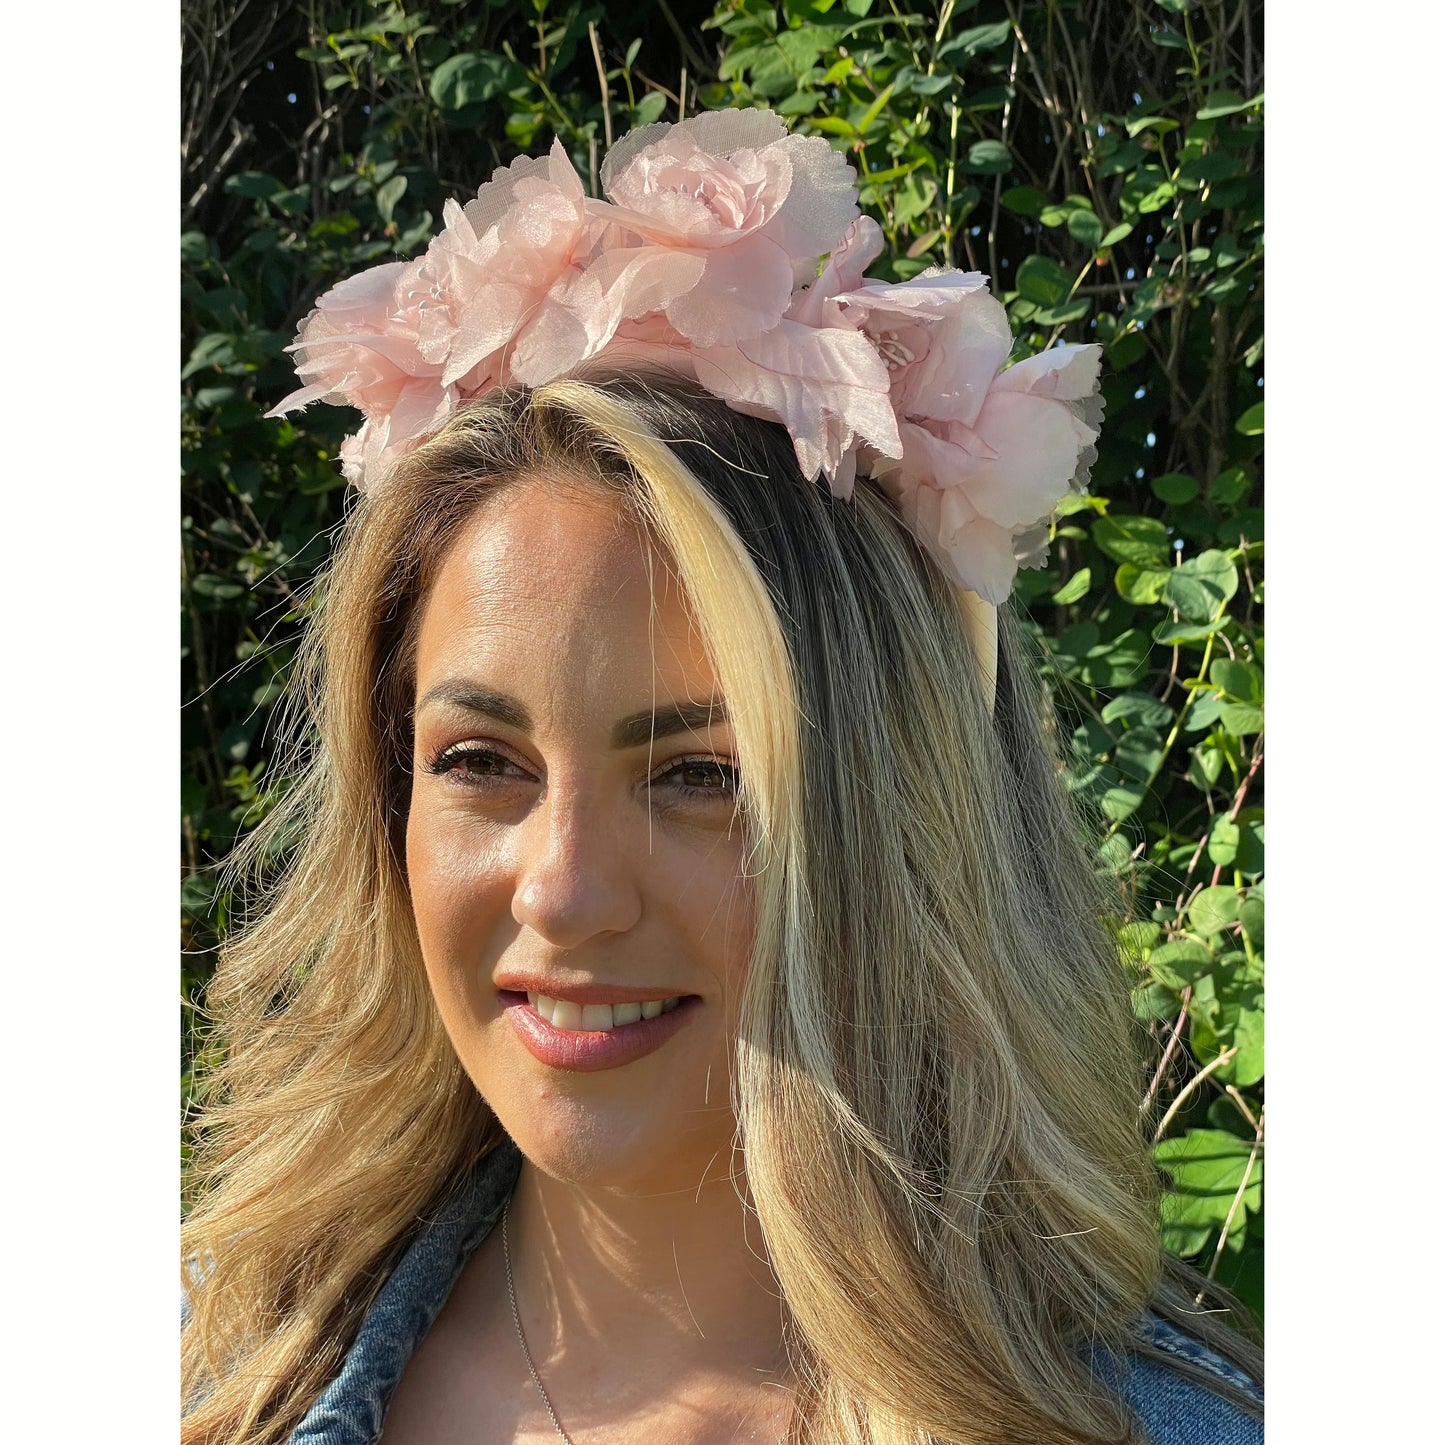 Pixie floral headband